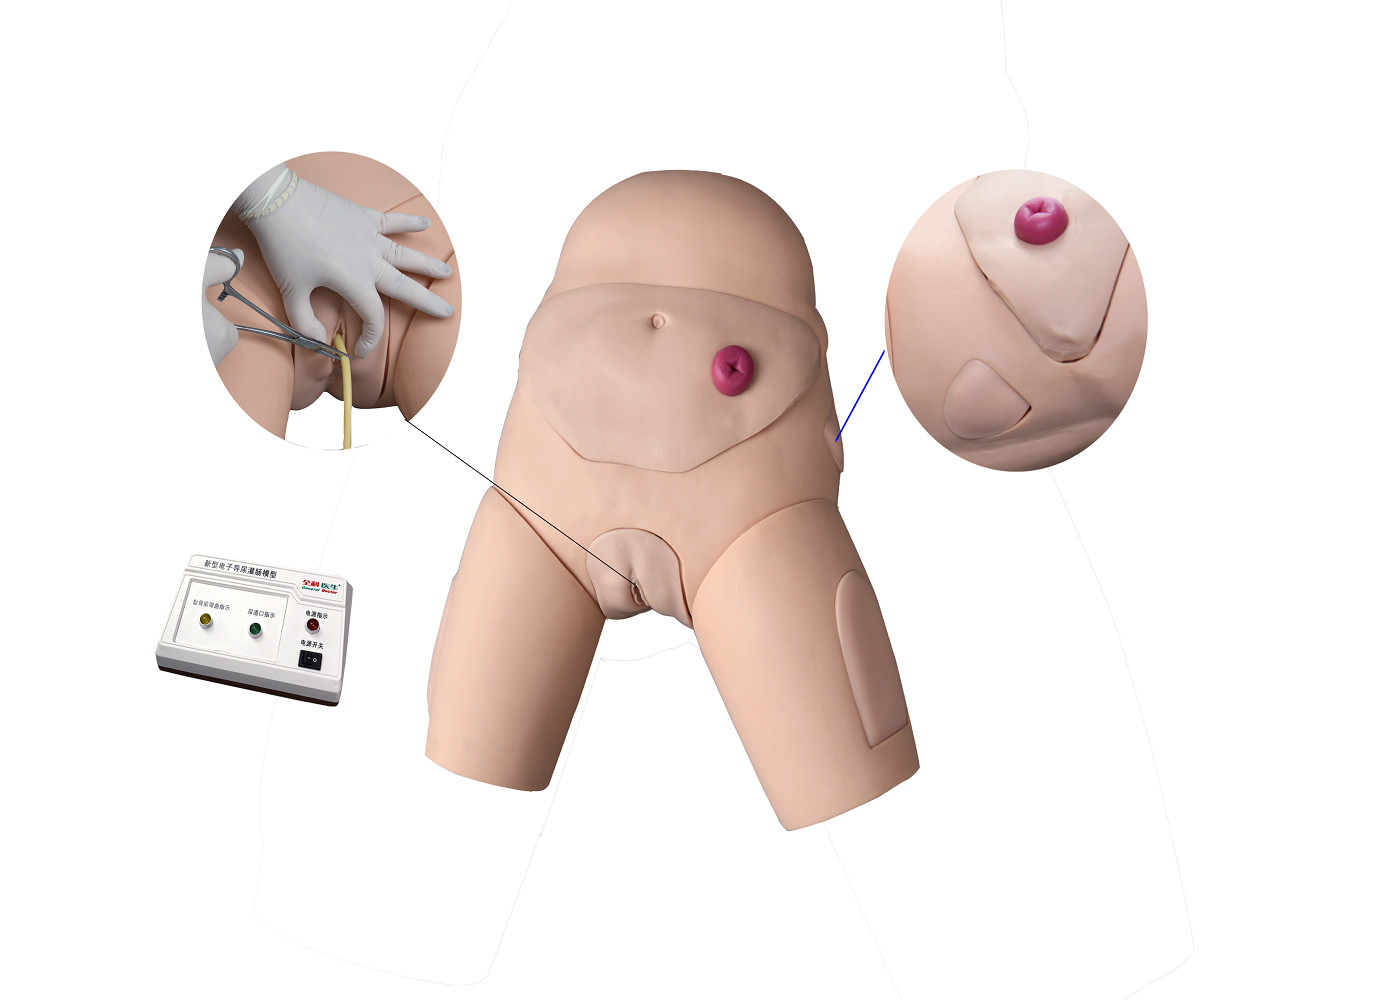 Electronic Urethral Catheterization and Enema Training Simulator